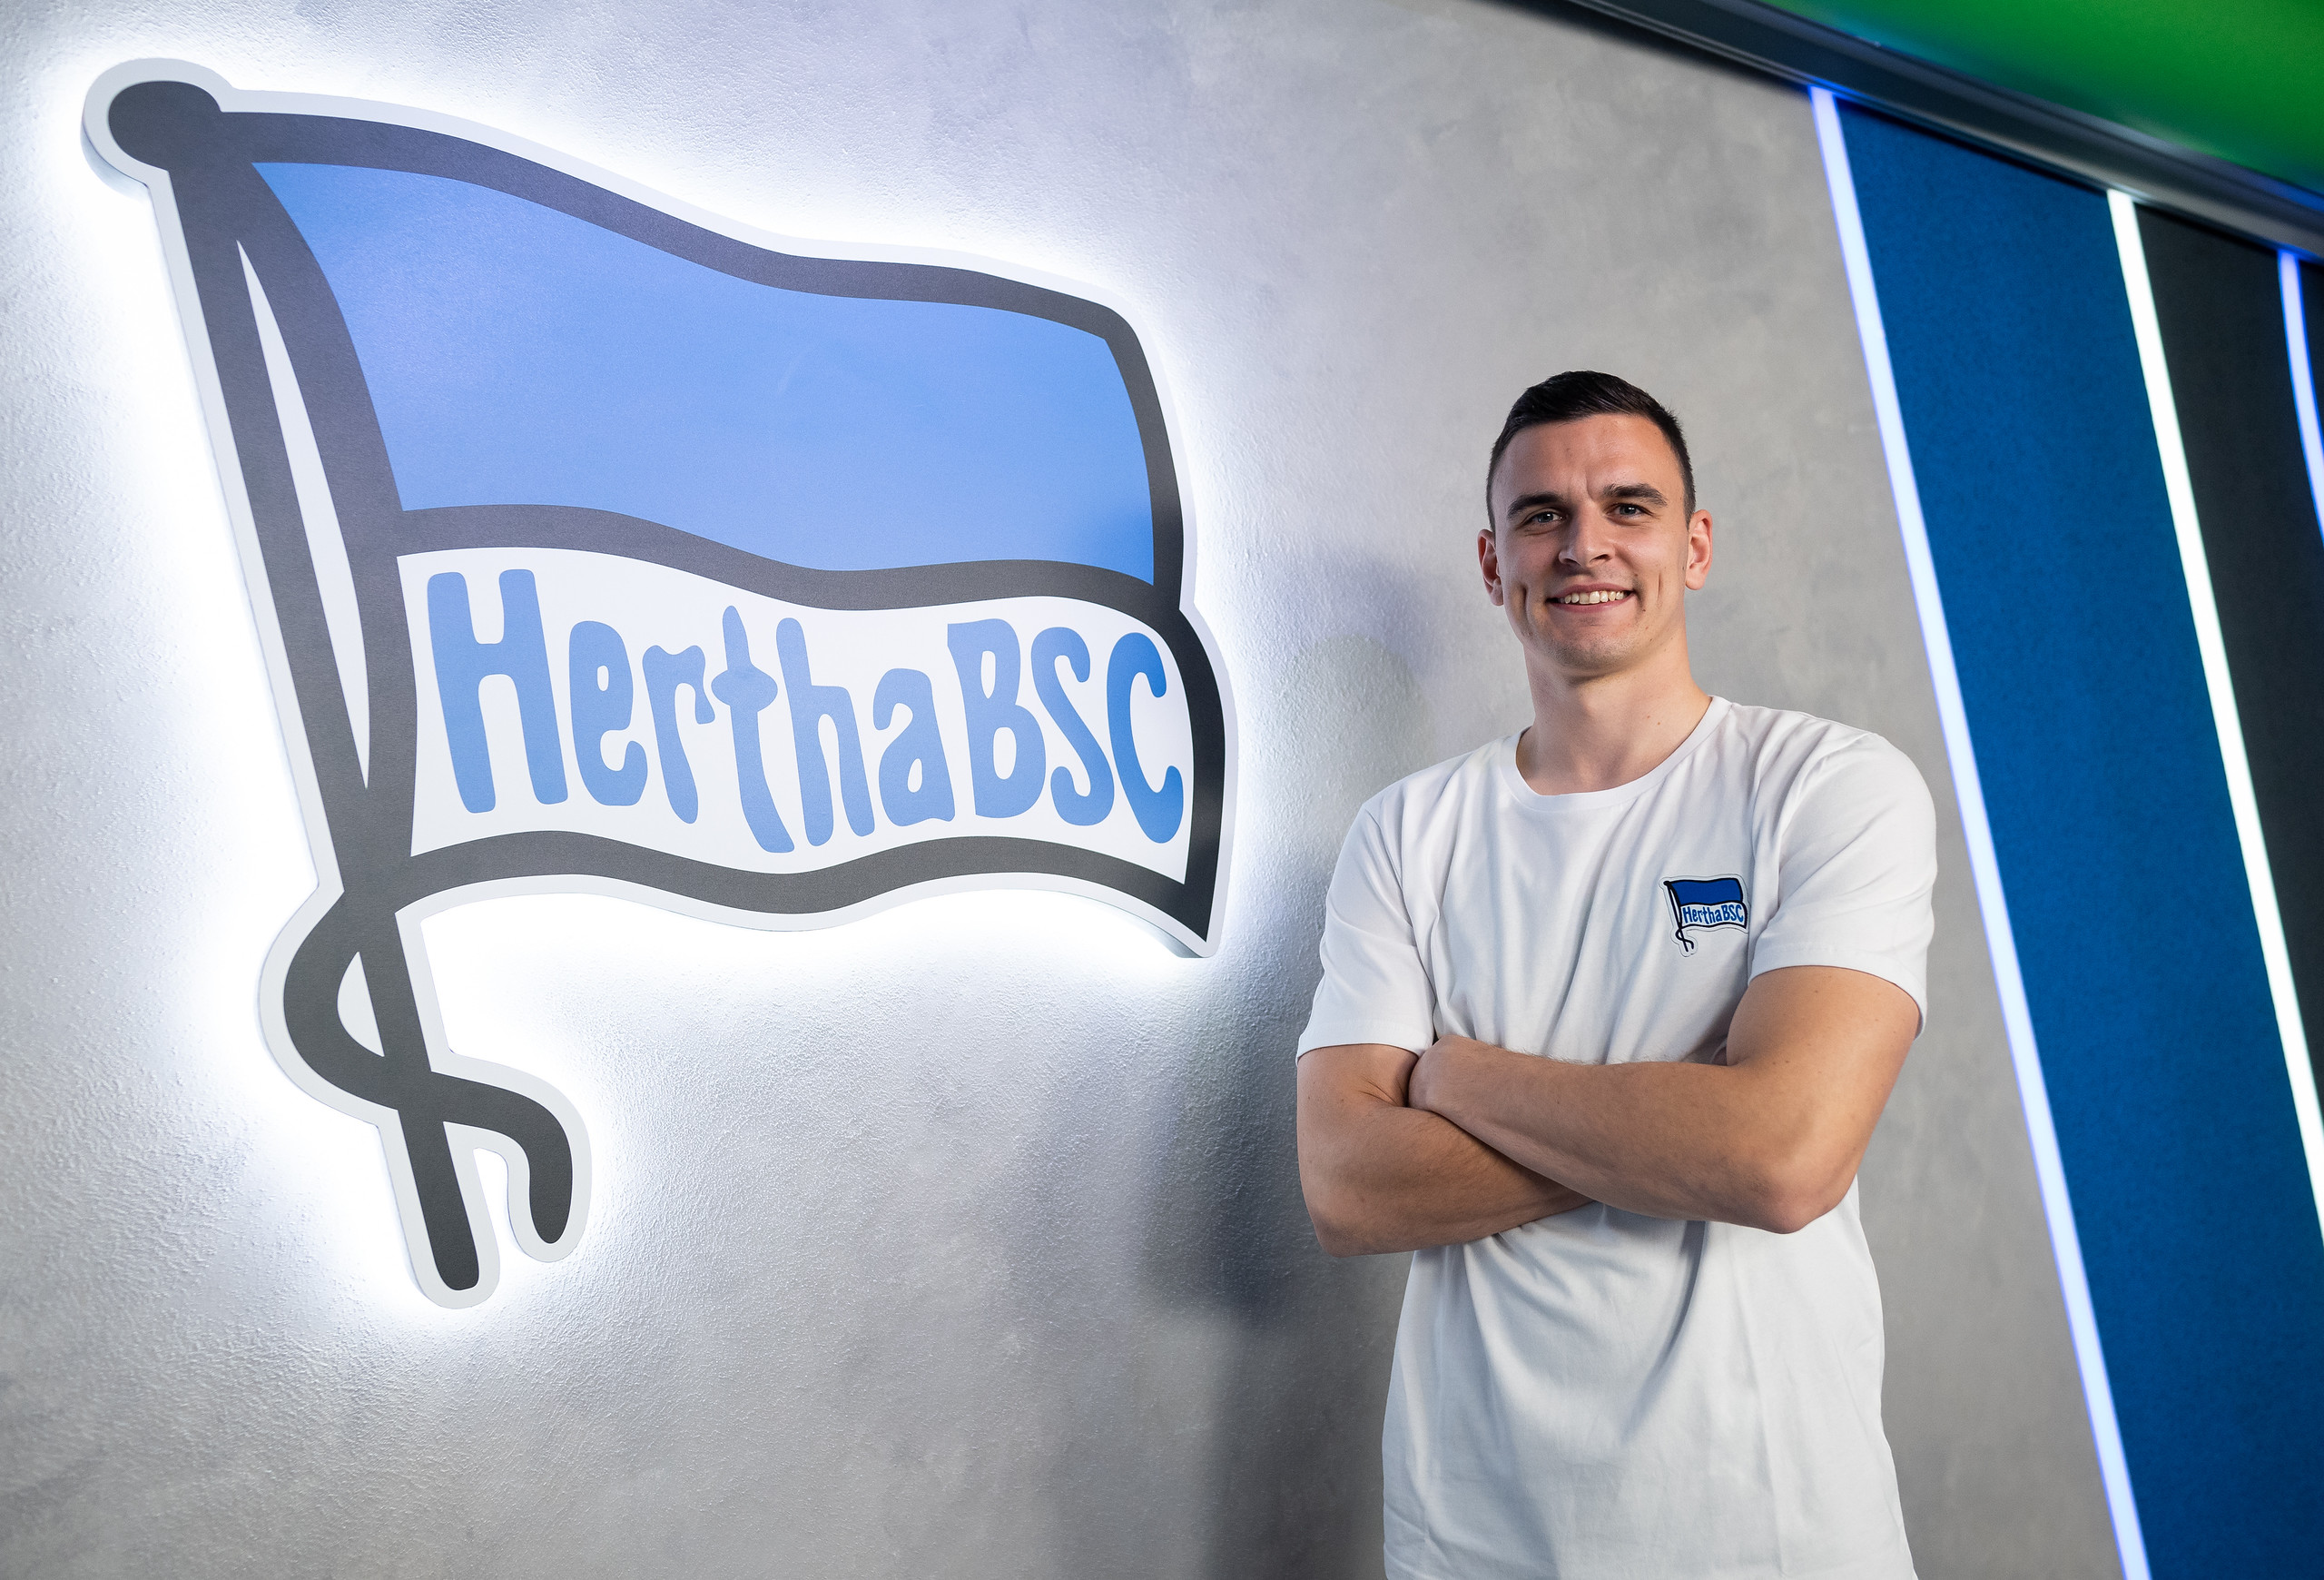 Filip Uremović posiert lächelnd vor der Hertha-Fahne.